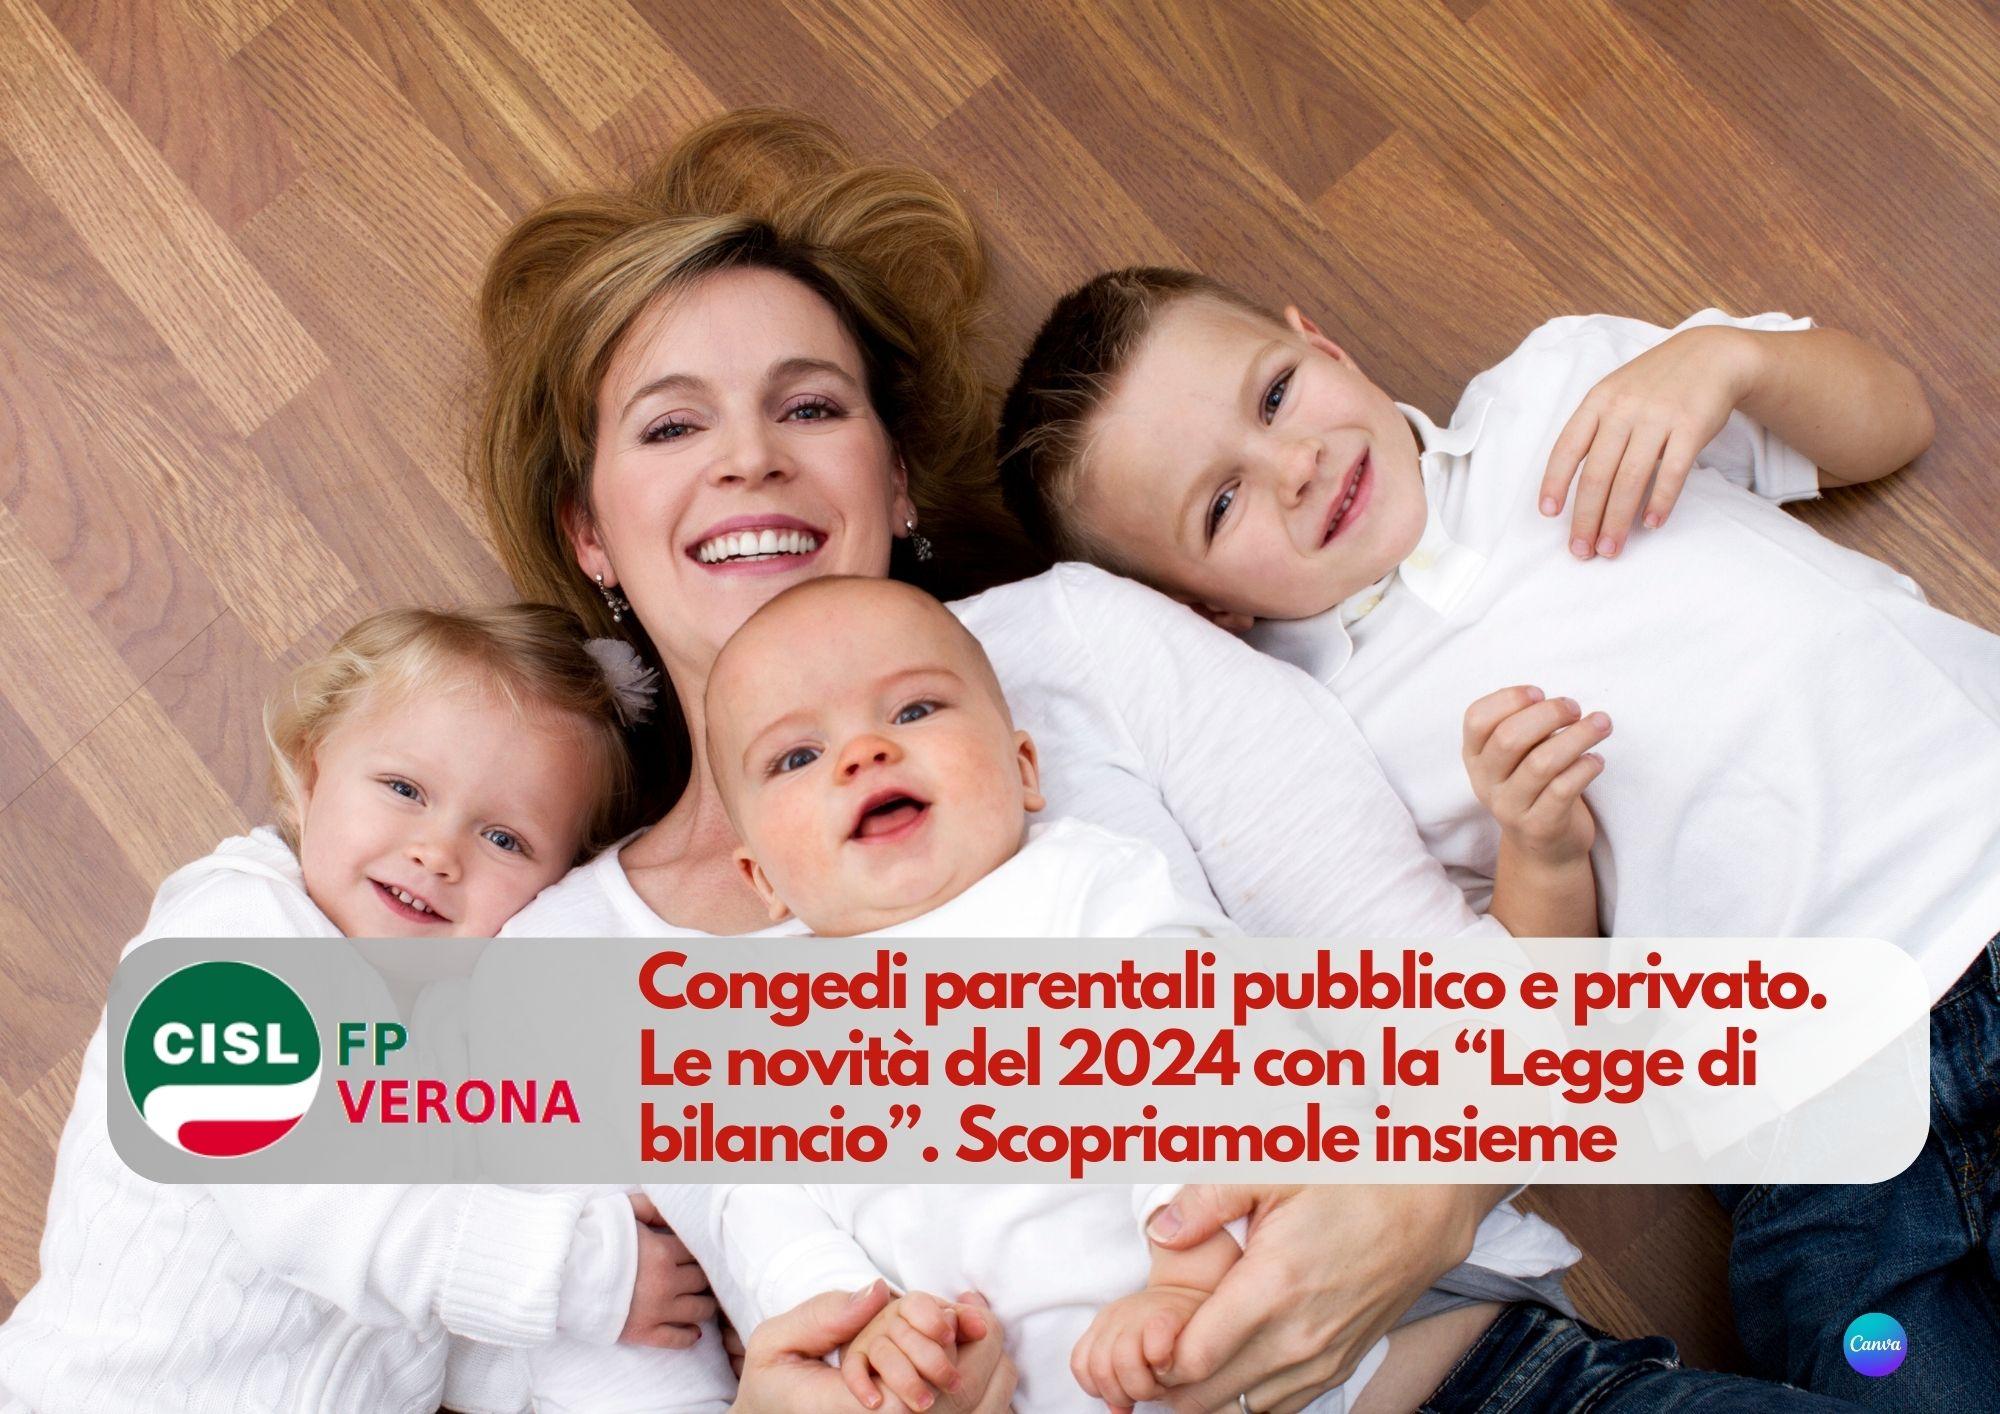 CISL FP Verona. Congedi parentali pubblico e privato. Le novità del 2024 con la Legge di bilancio